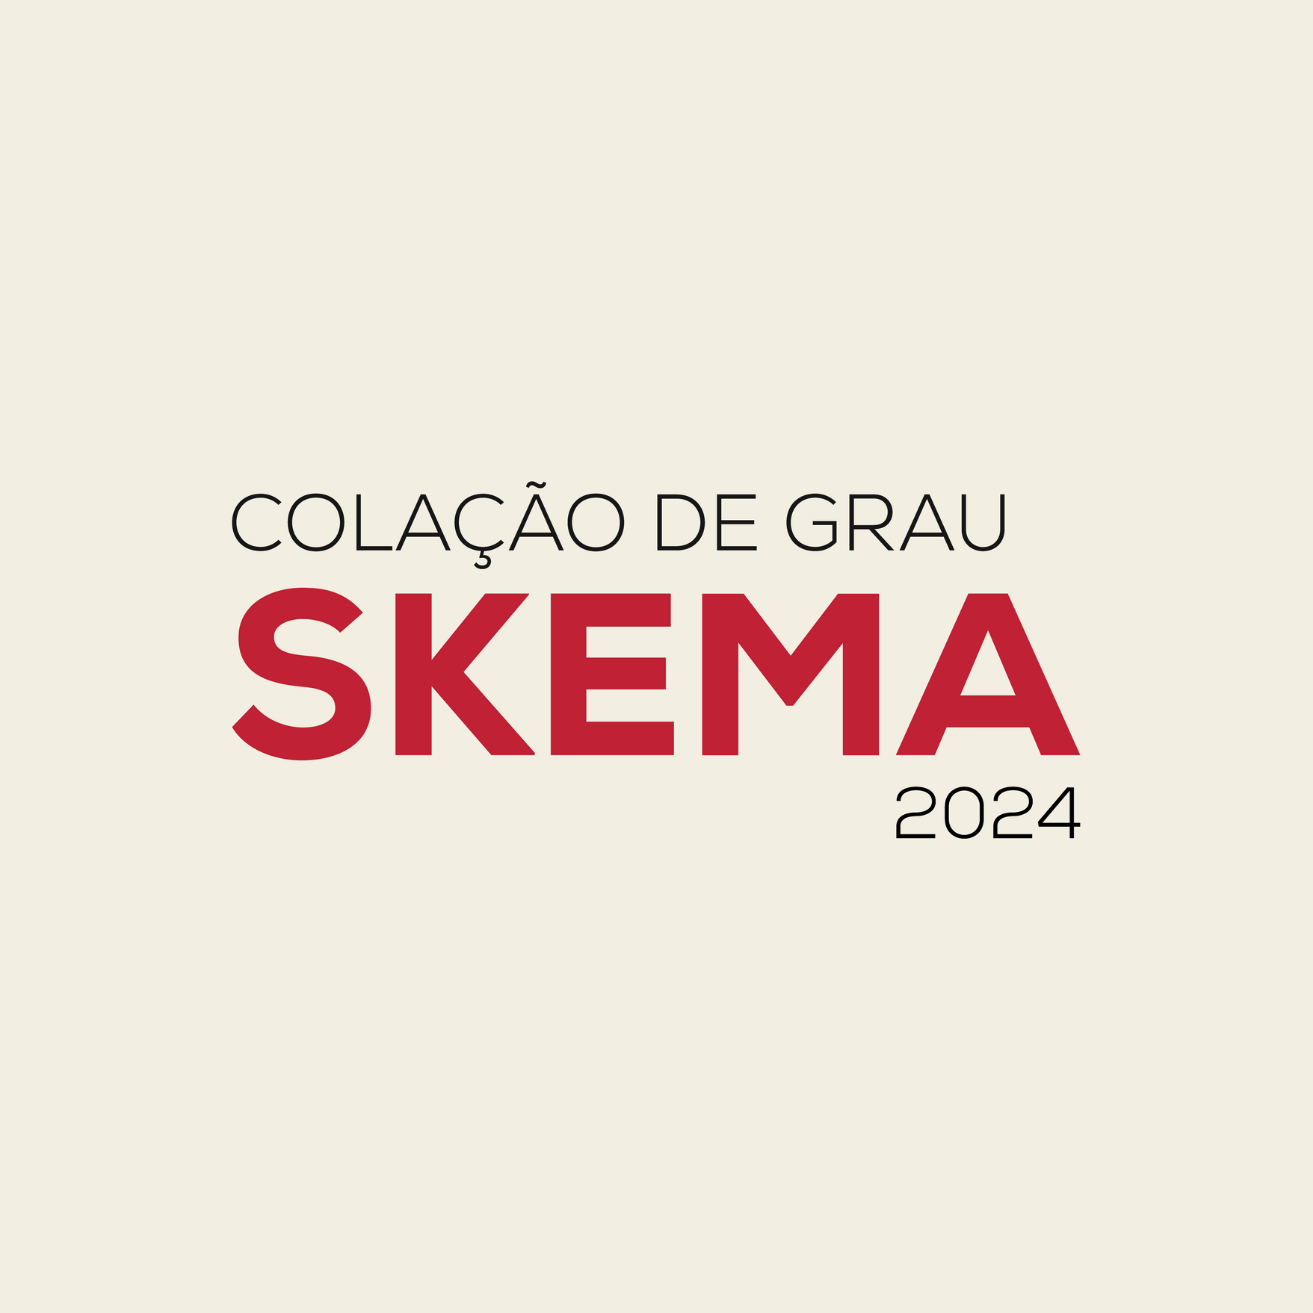 SKEMA Brasil realiza colação de grau da segunda turma de Administração